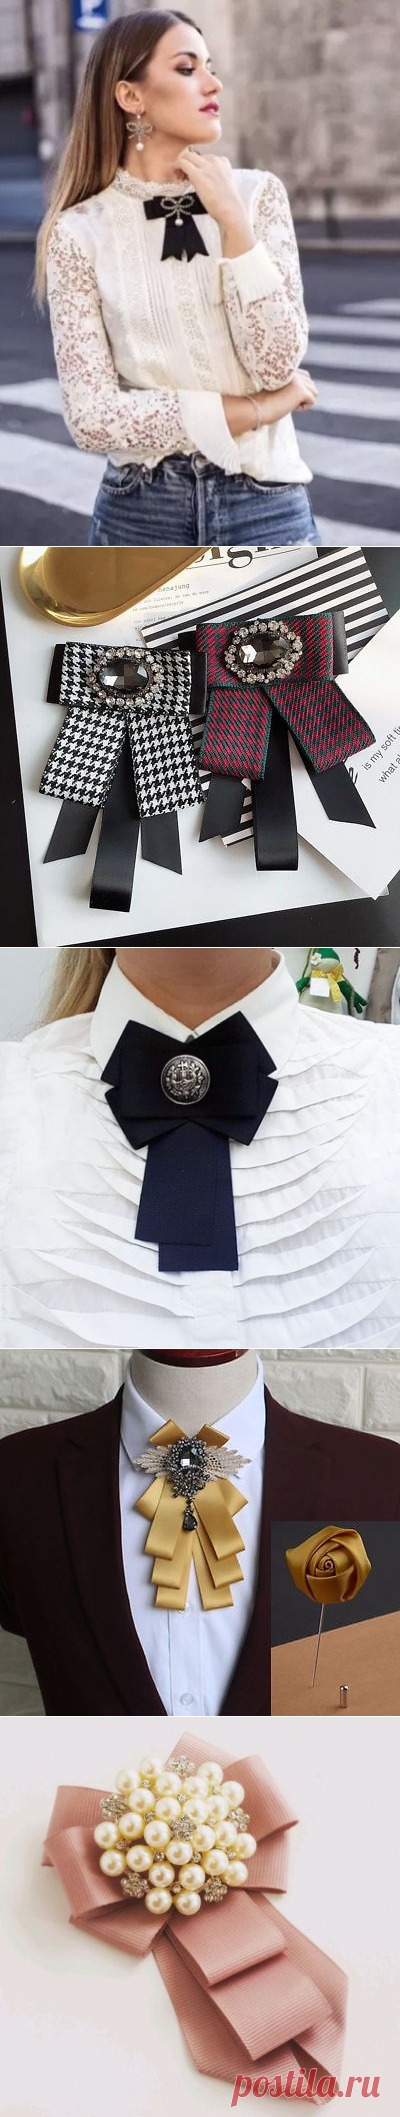 Женские галстуки-банты: рукотворная красота, которая украсит вашу одежду